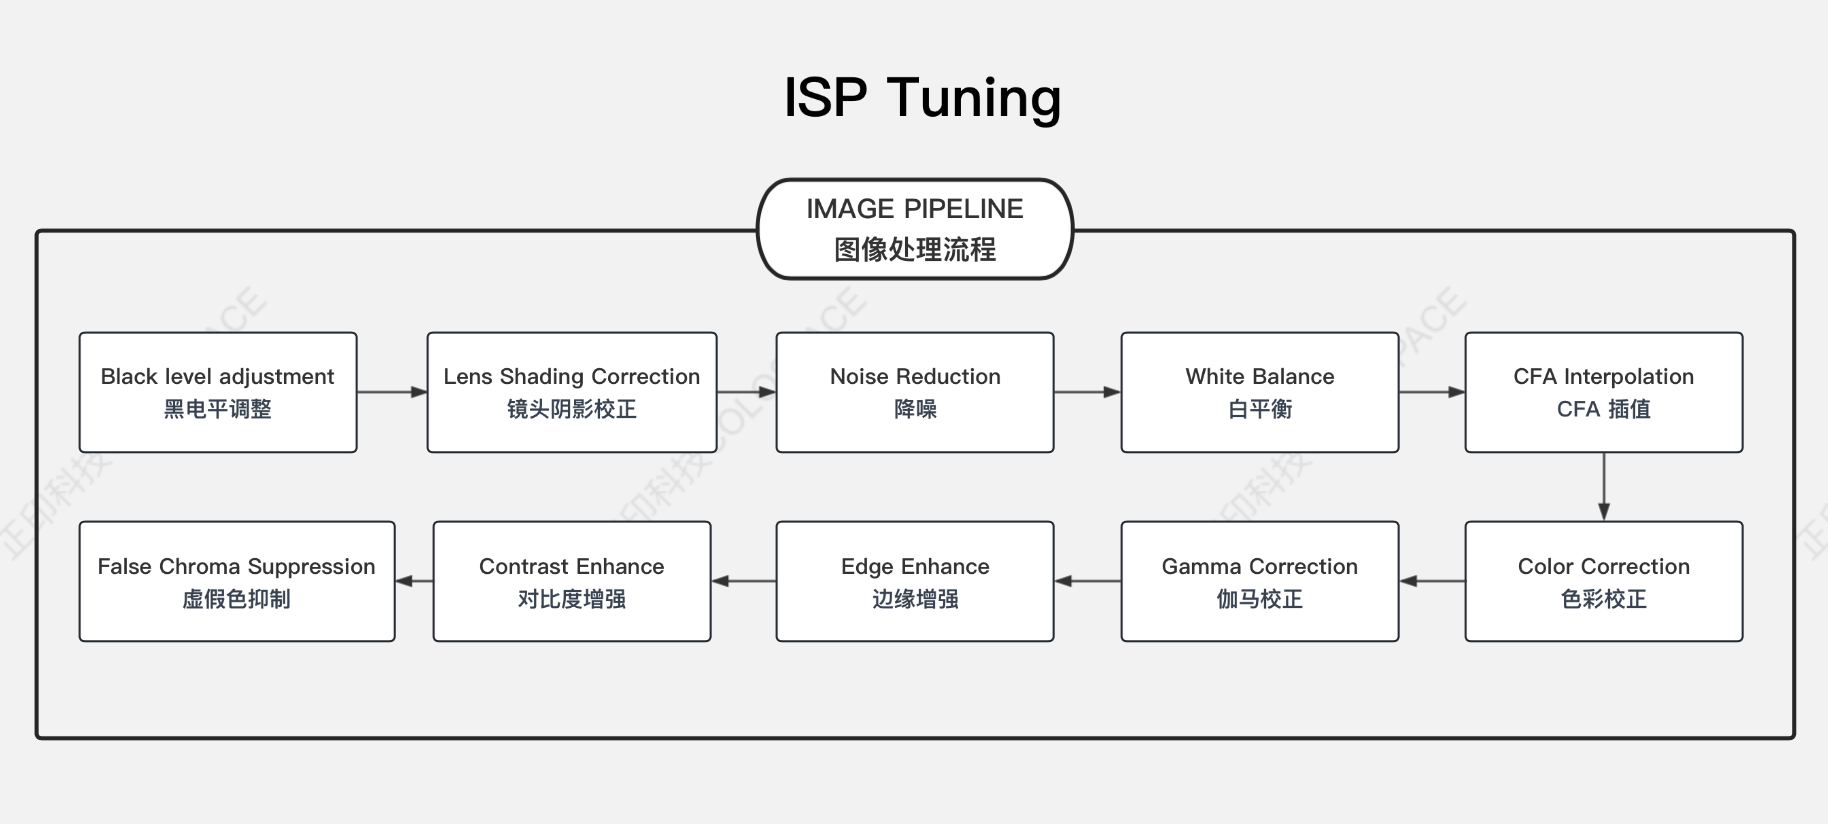 ISP Tuning圖像質量調優_ISP 調整原理圖